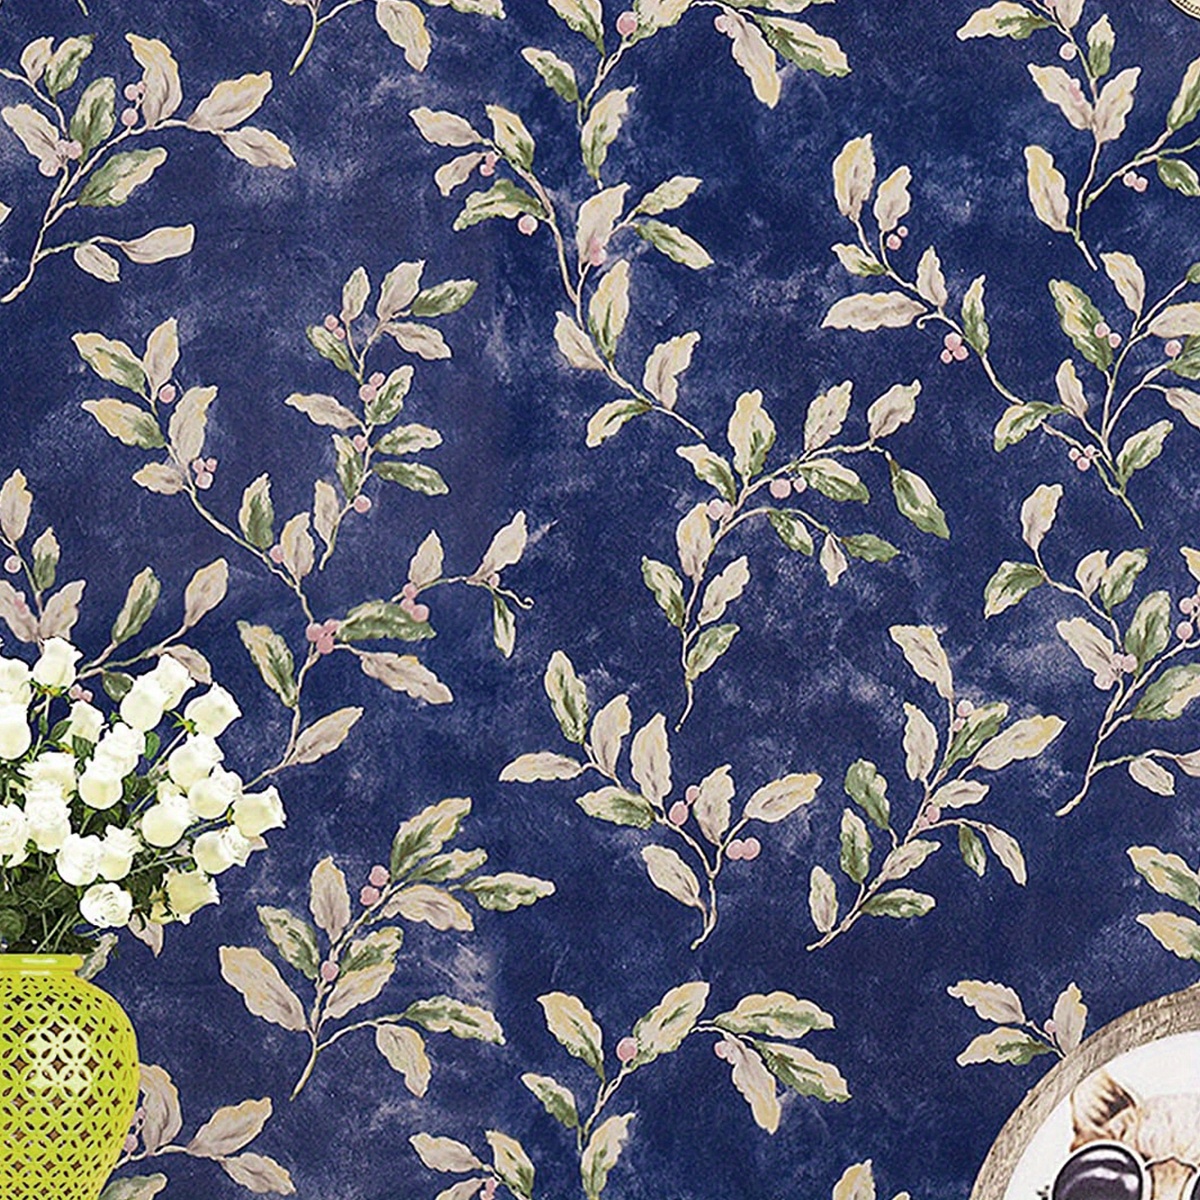  Papel pintado autoadhesivo Rollo de papel textil indonesio 2  batik floral fotos libres de derechos de autor Papel pintado removible Papel  pintado decorativo mural de pared Carteles Cubierta del hogar Película